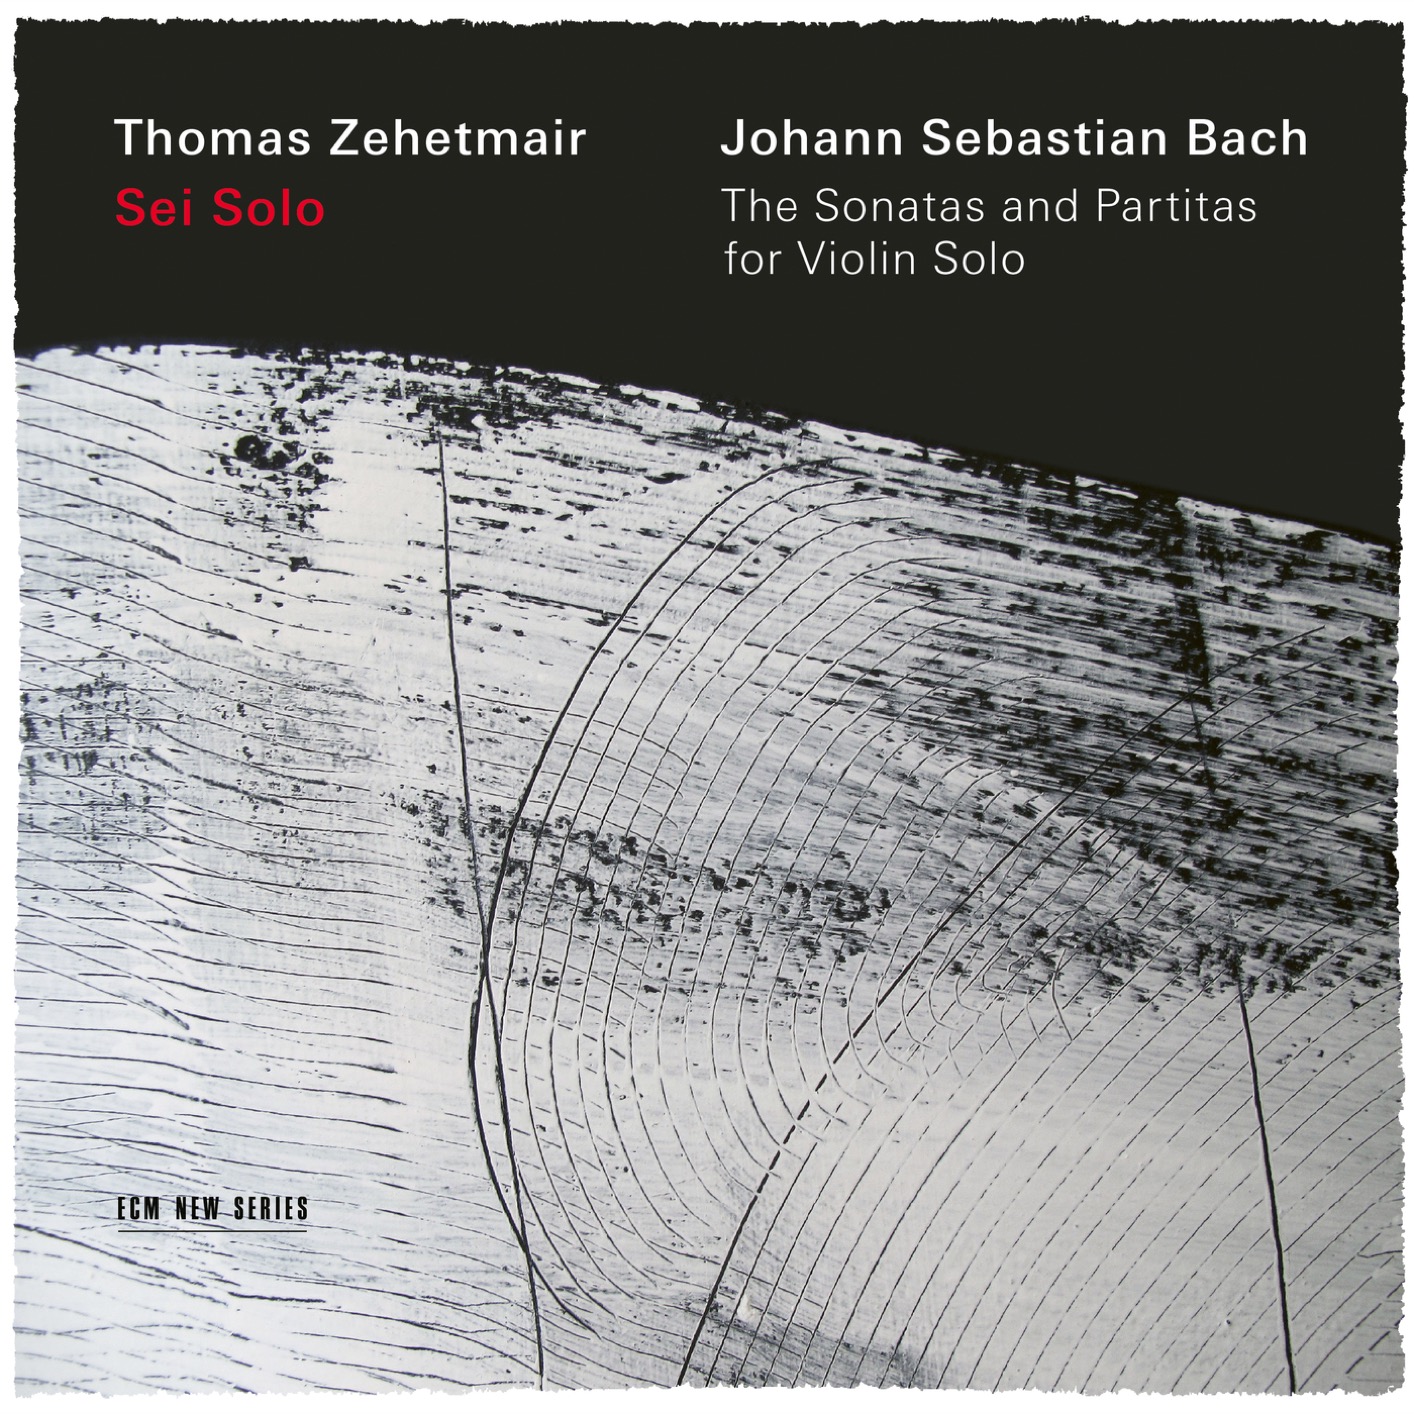 Thomas Zehetmair - J.S. Bach: Sei Solo - The Sonatas and Partitas (2019) [FLAC 24bit/96kHz]